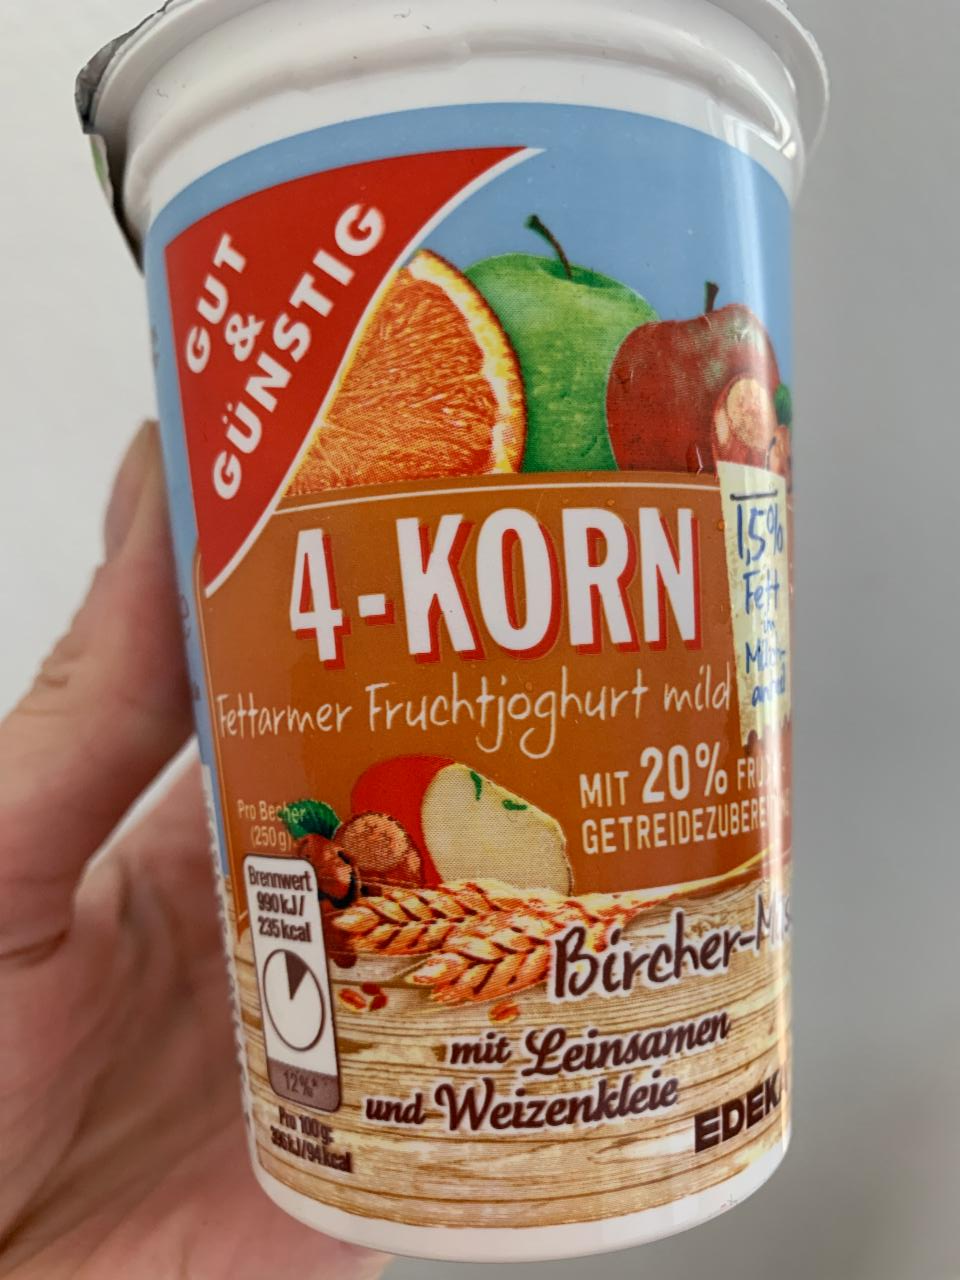 Фото - йогурт с мюсли 4-Korn